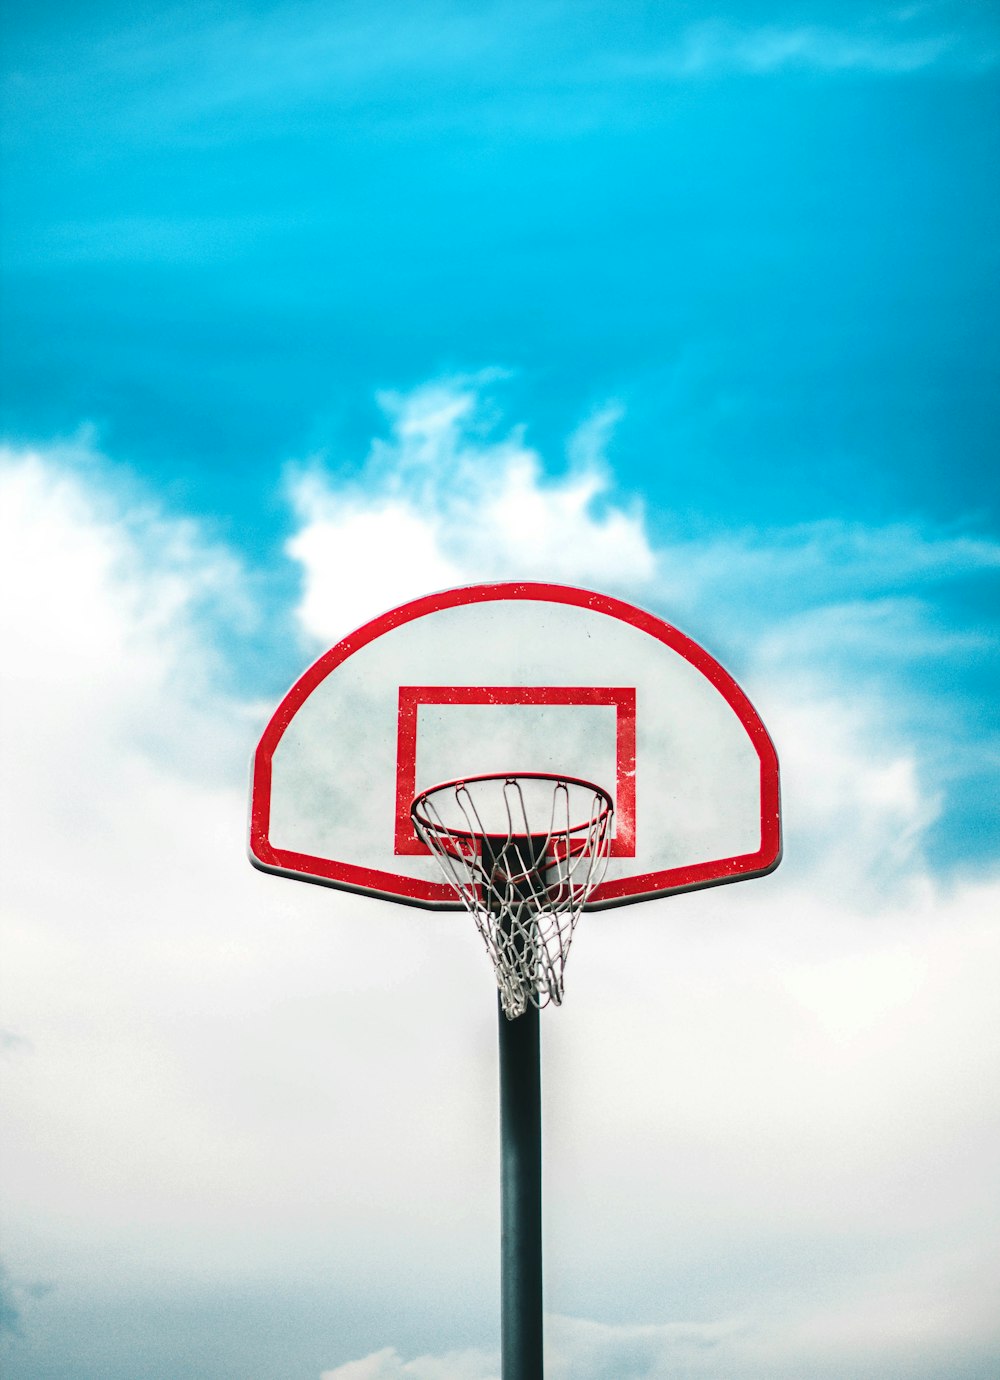 white basketball system photo – Free Cephalonia Image on Unsplash